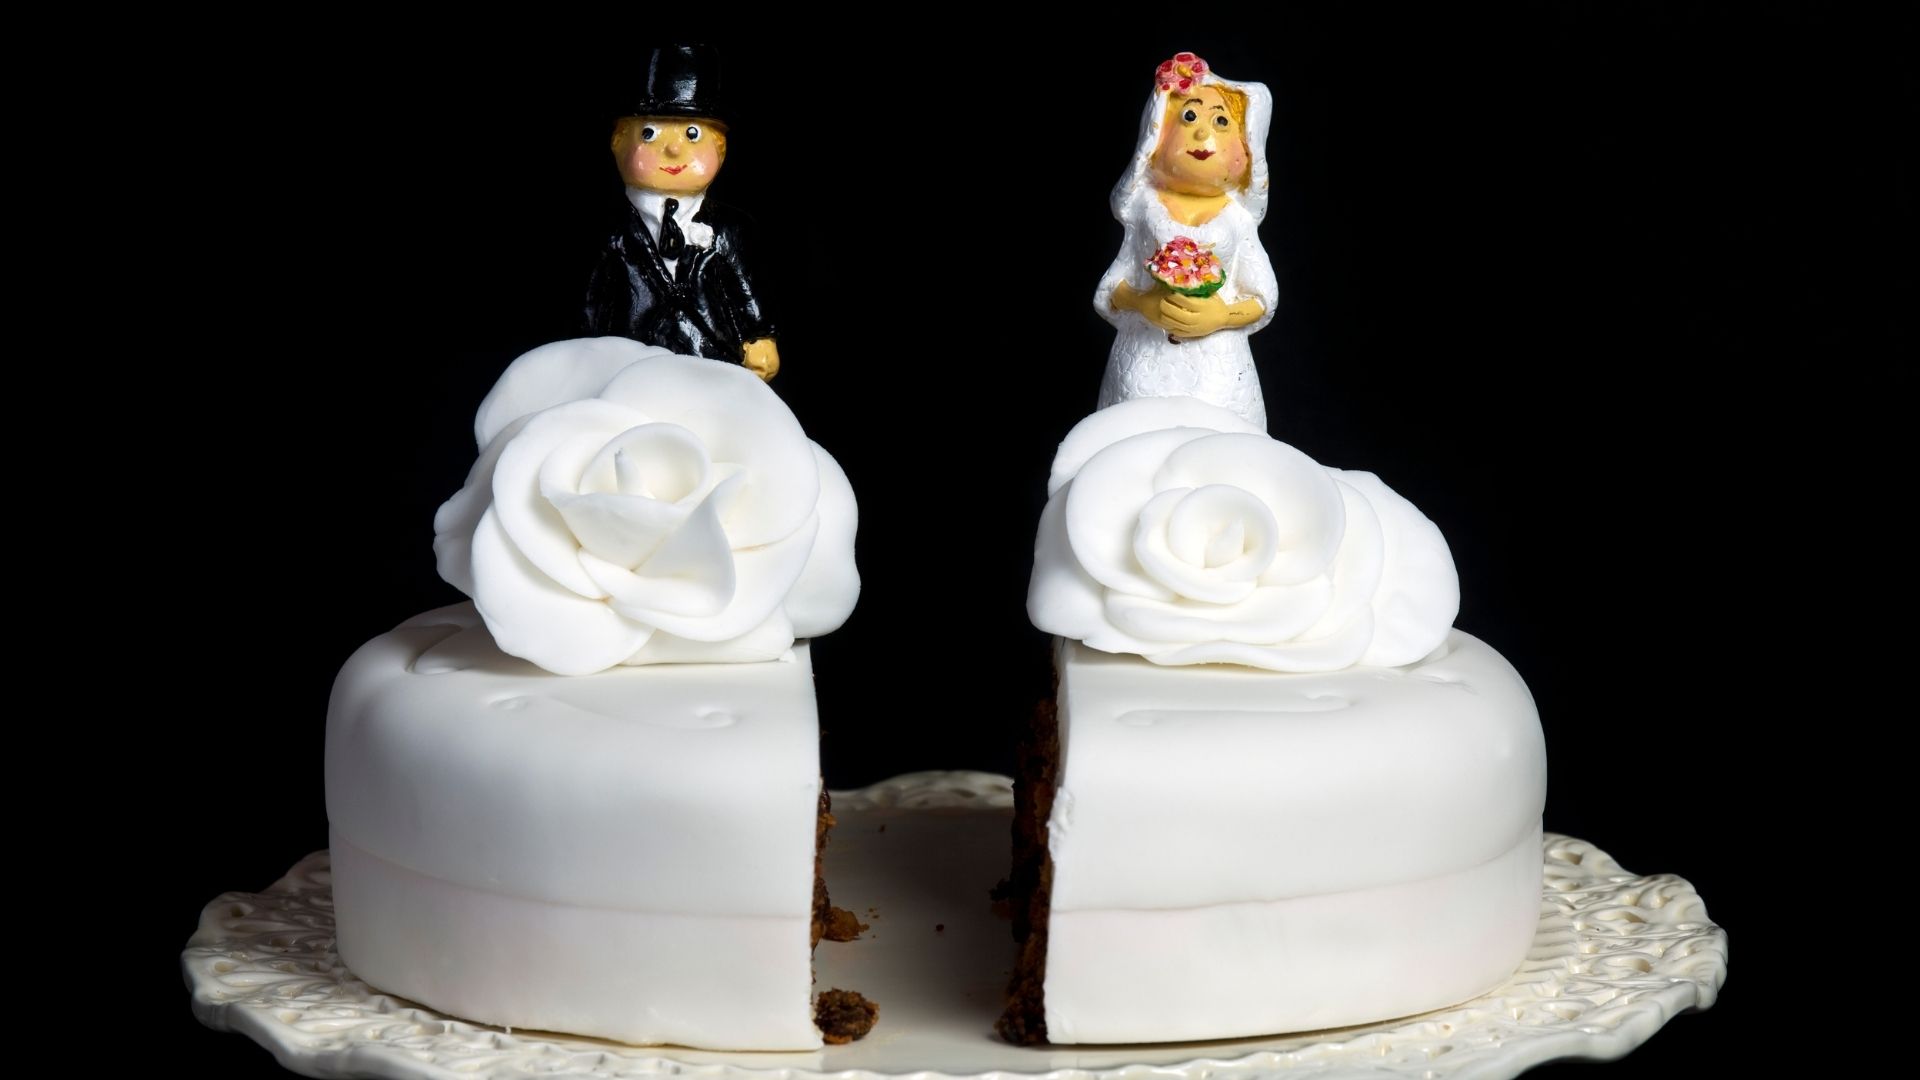 gâteau de mariage blanc coupé en deux séparant les deux époux chacun sur un part